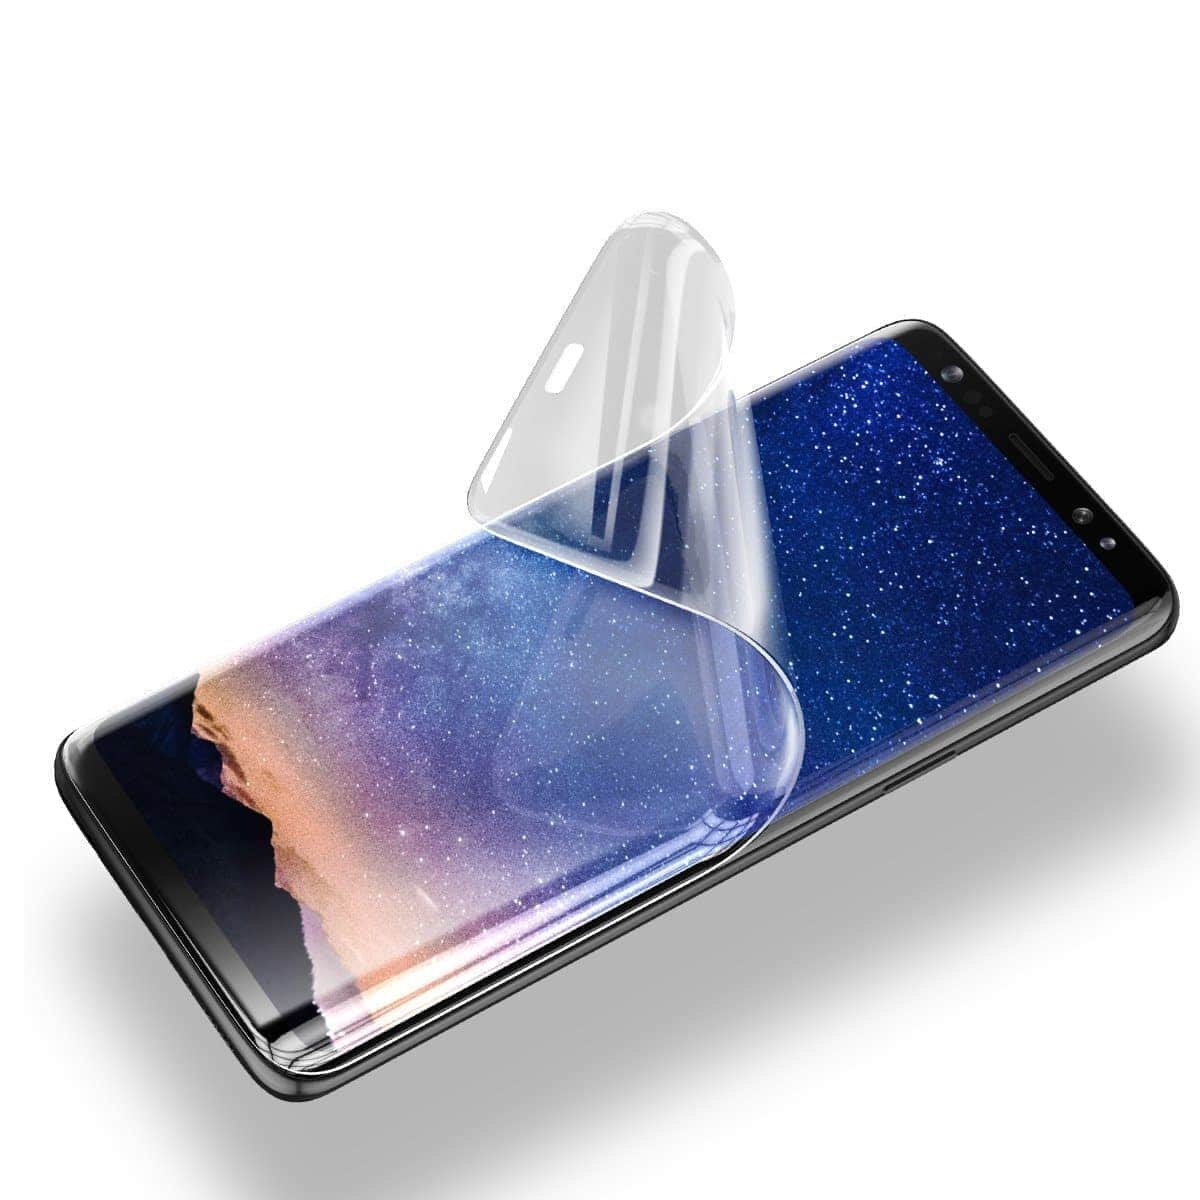 Защитная пленка Samsung Galaxy Note 5 N920C полиуретановая глянцевая Lite Status Skin